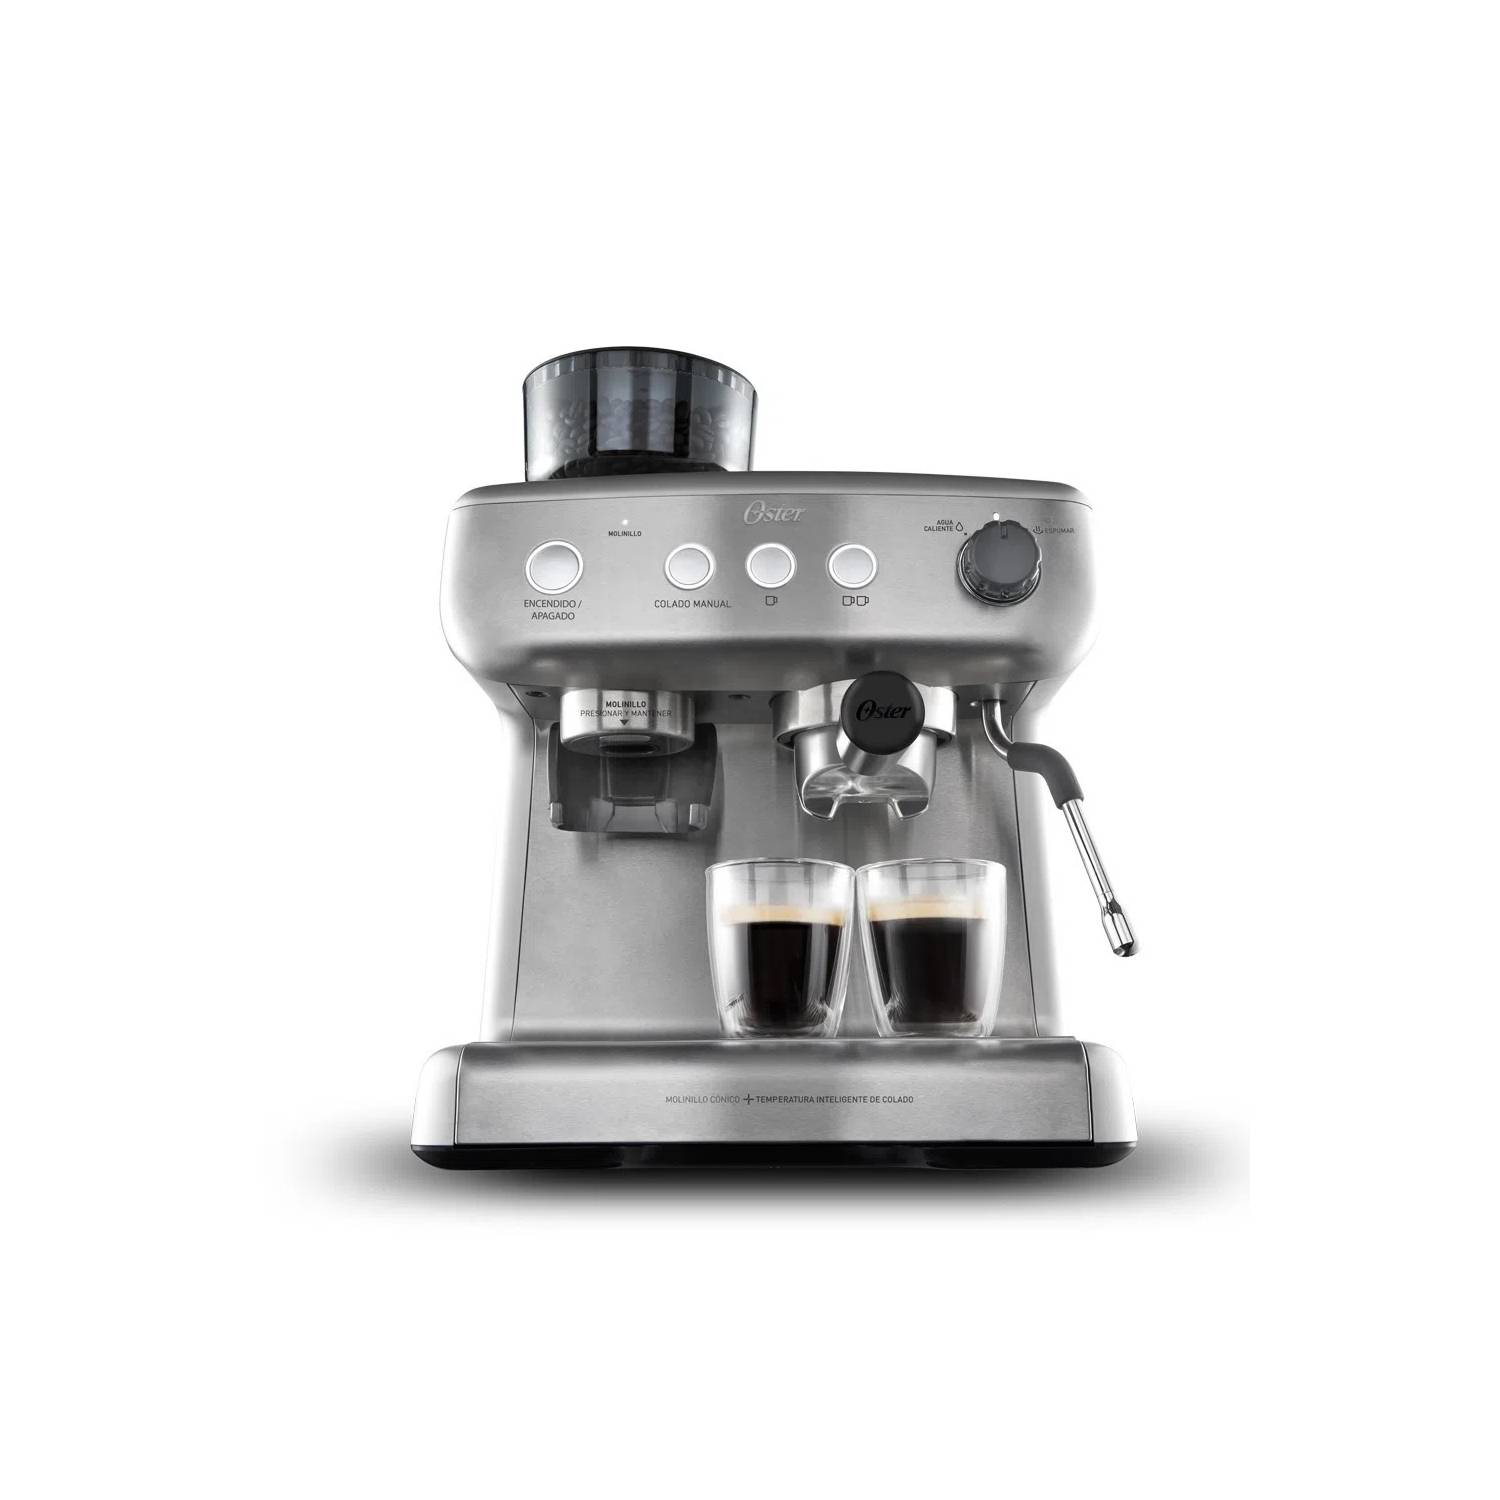 Maquina de Café Espresso 1350W. 15bar. (Con moledor de granos